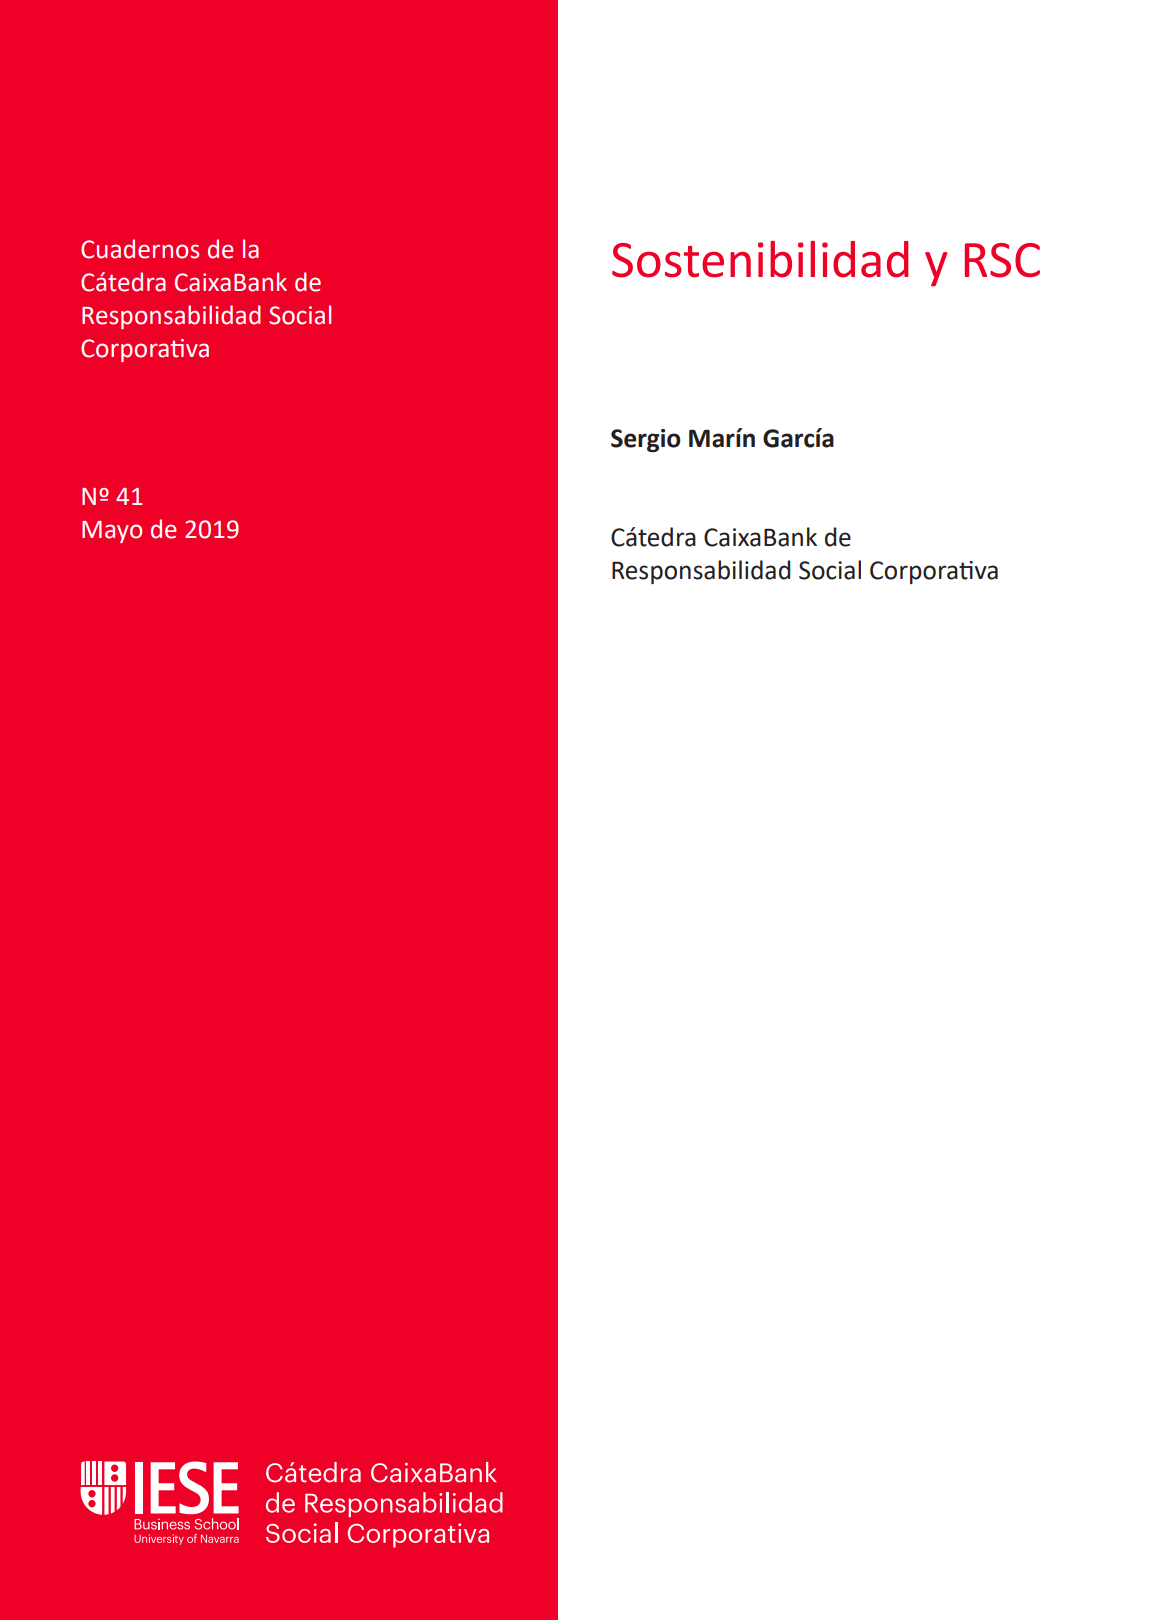 rsc y sostenibilidad catedra caixabank